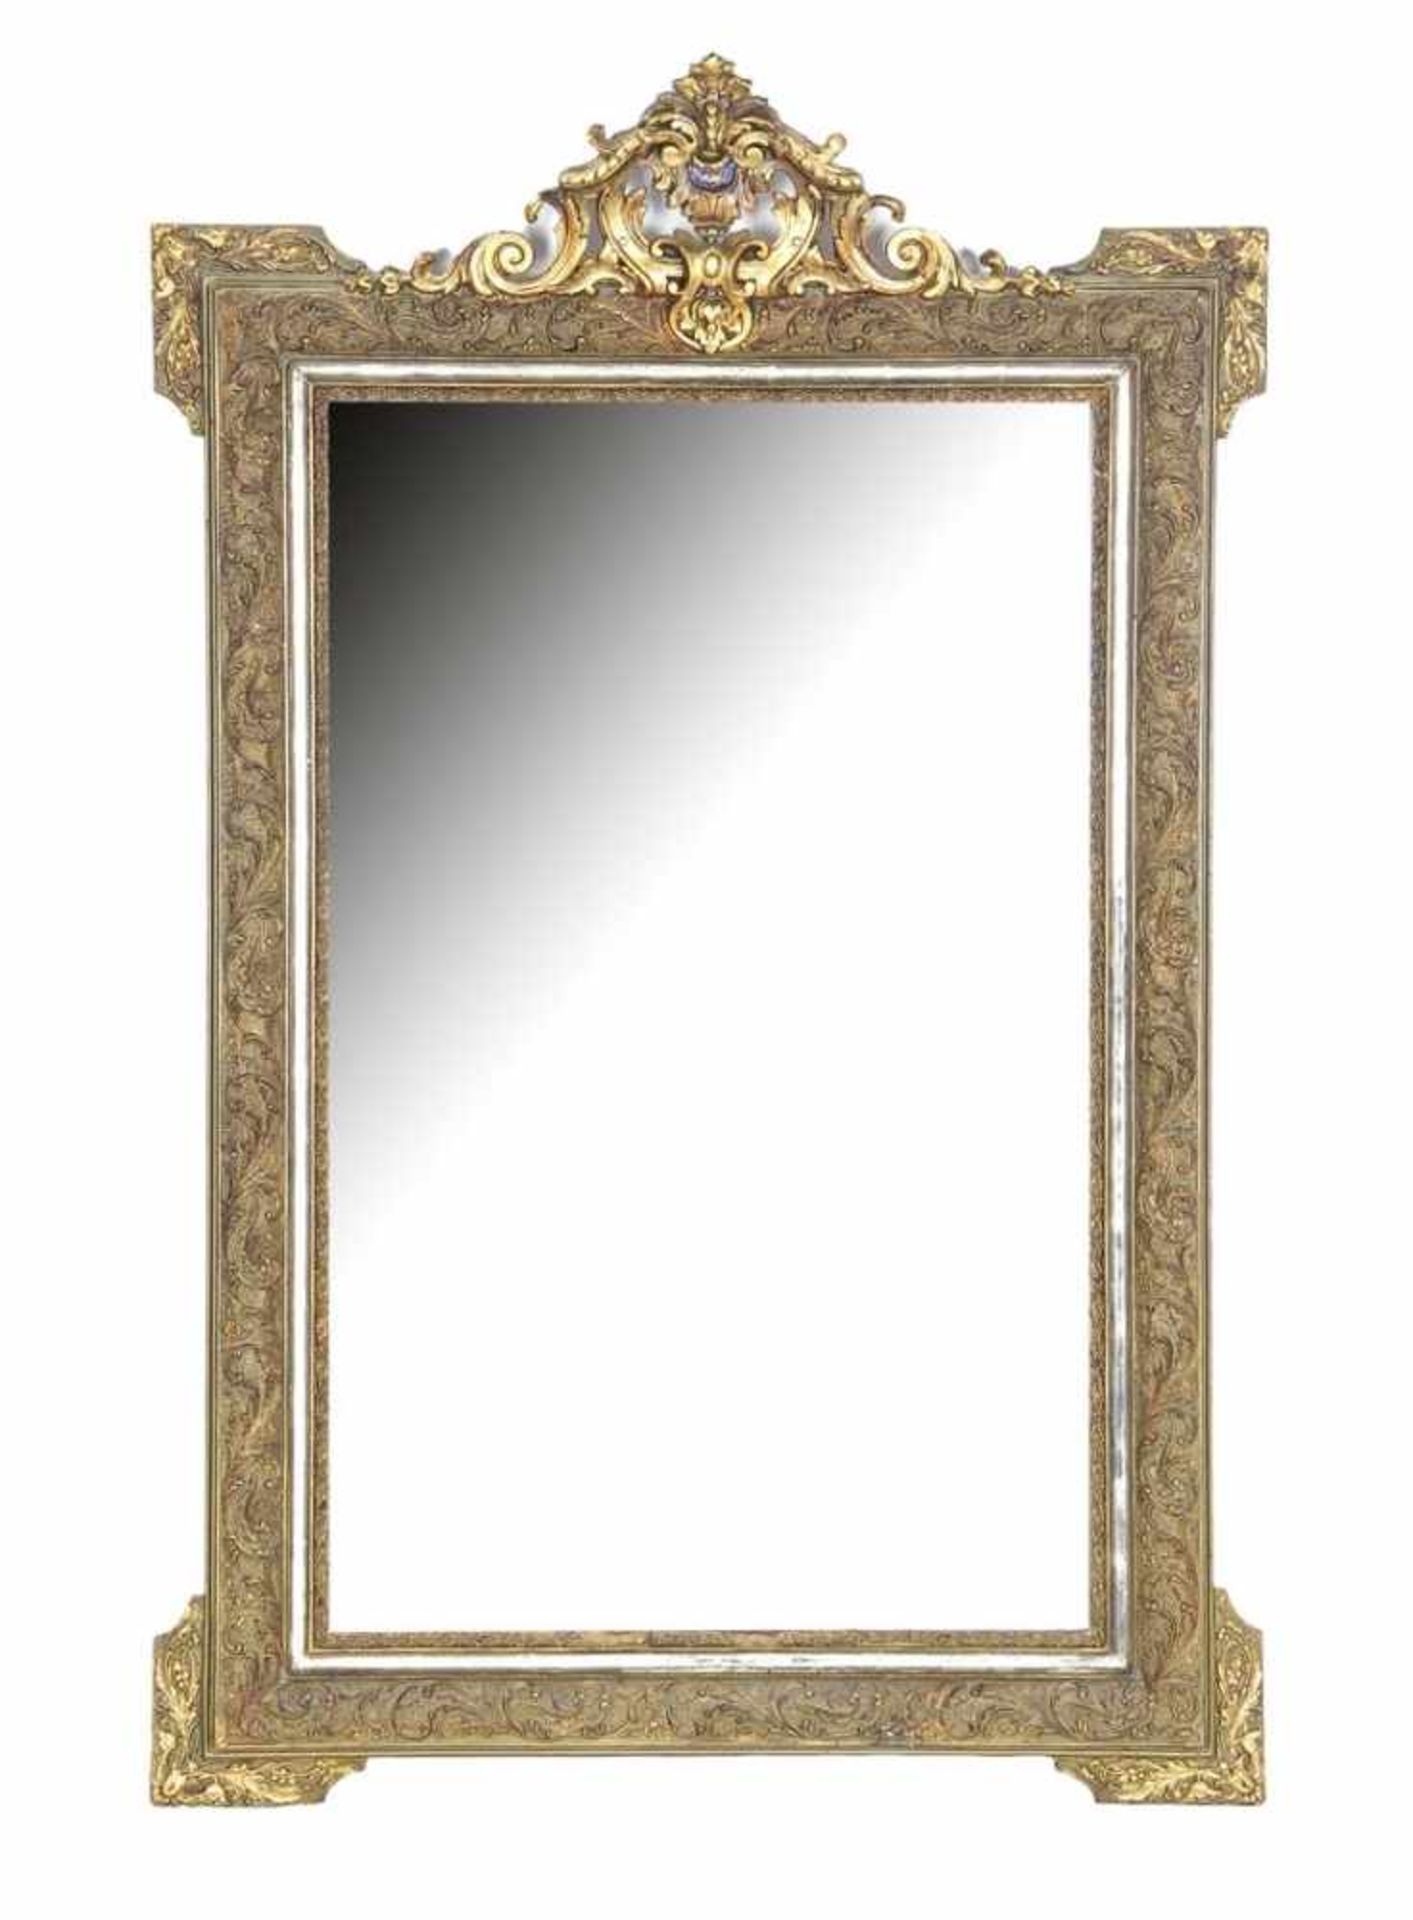 Goudkleurige facetgeslepen spiegel met kuif en rijkversierde lijst met guirlandes, 135x85 cm